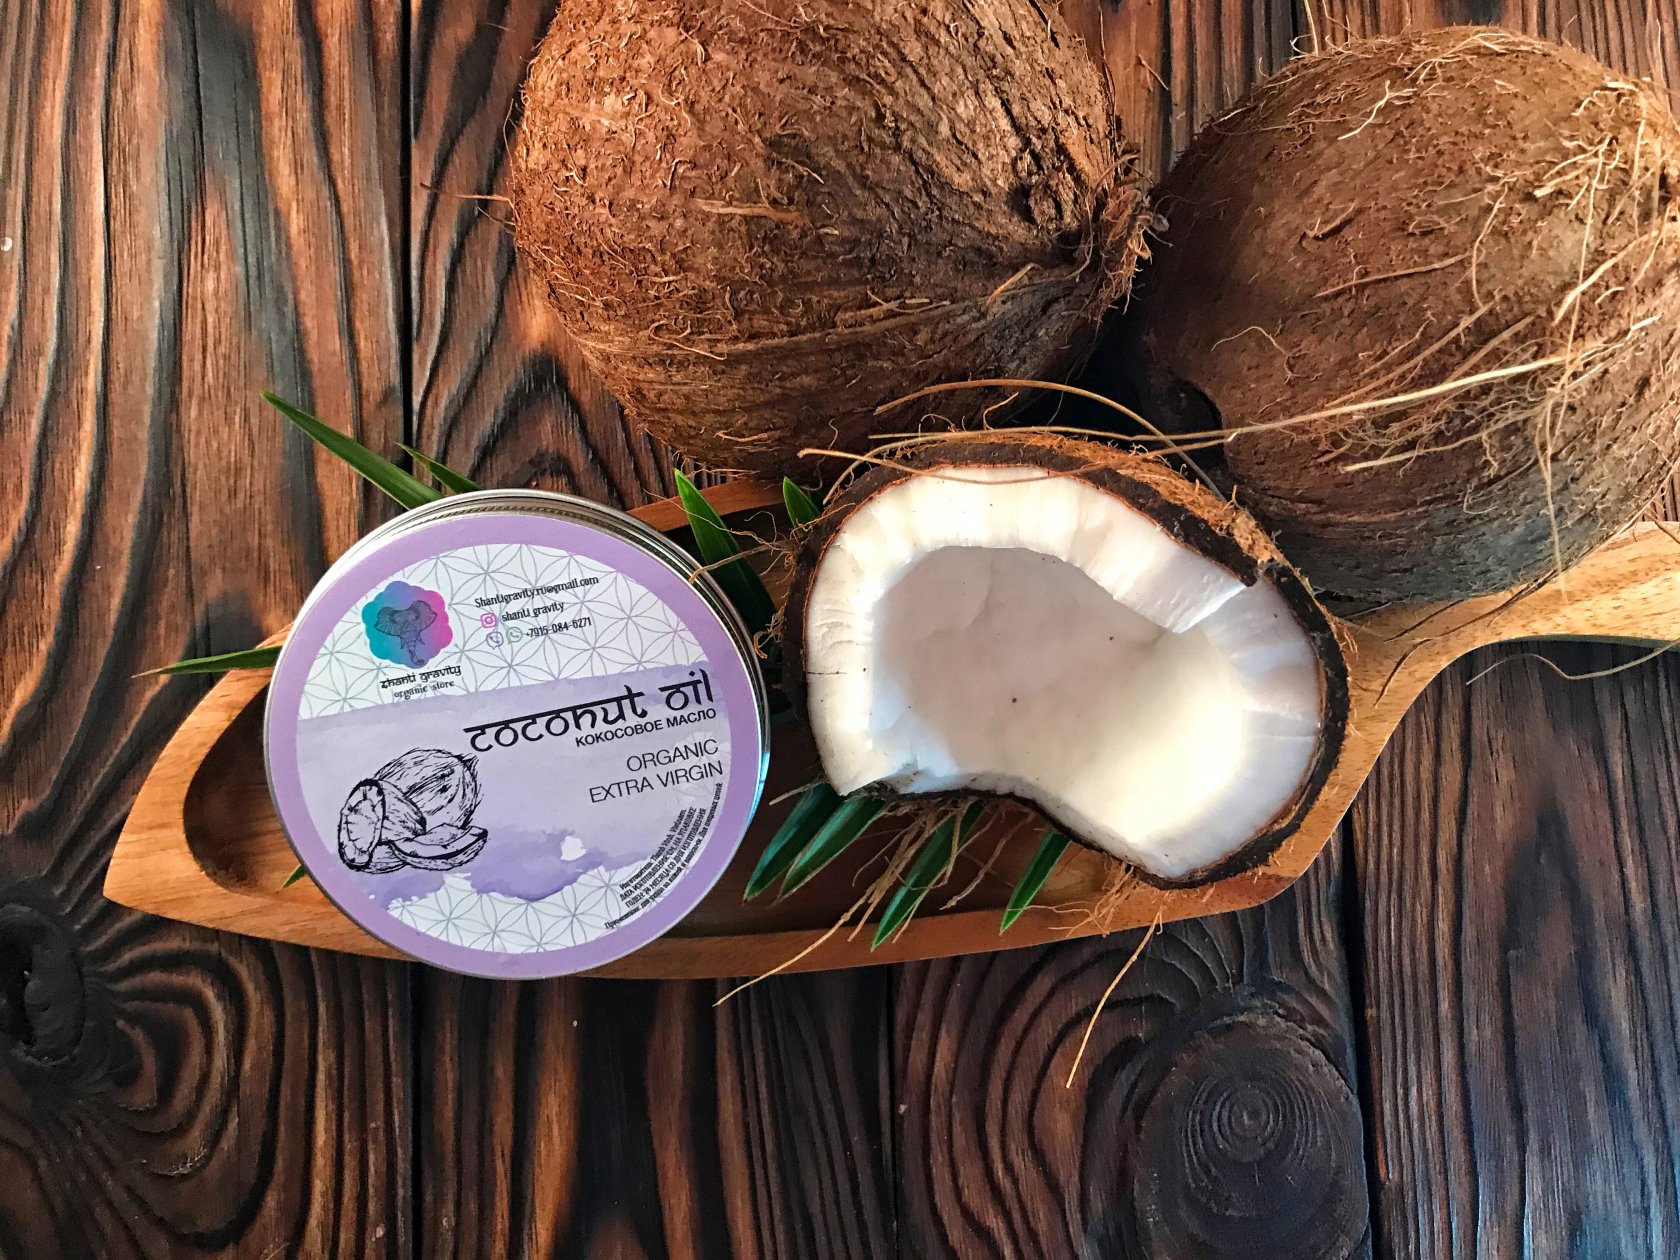 Кокосовое молоко извлекают из мякоти кокосов, оно обладает кремовой текстурой, легкой натуральной сладостью и многими плюсами по сравнению с коровьим